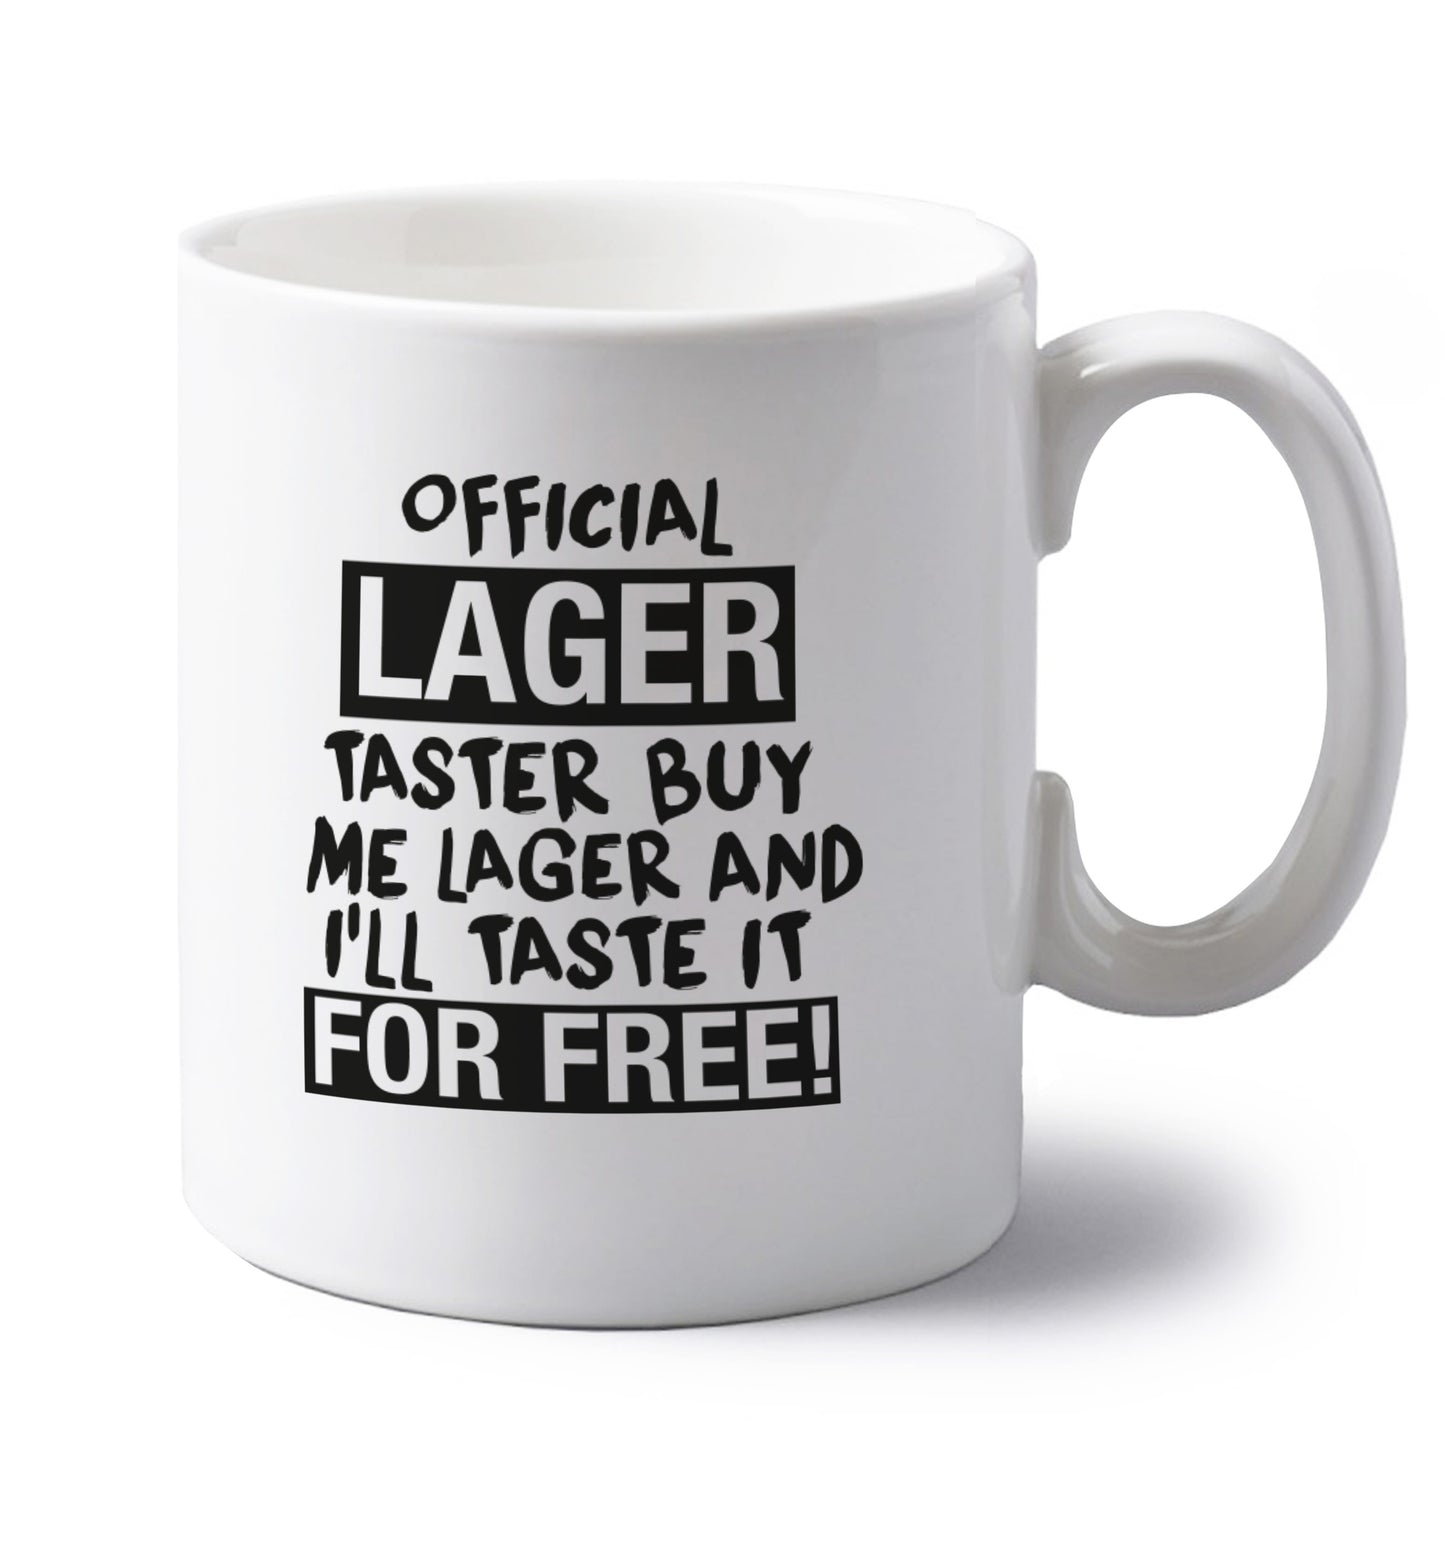 Official lager taster buy me lager and I'll taste it for free! left handed white ceramic mug 